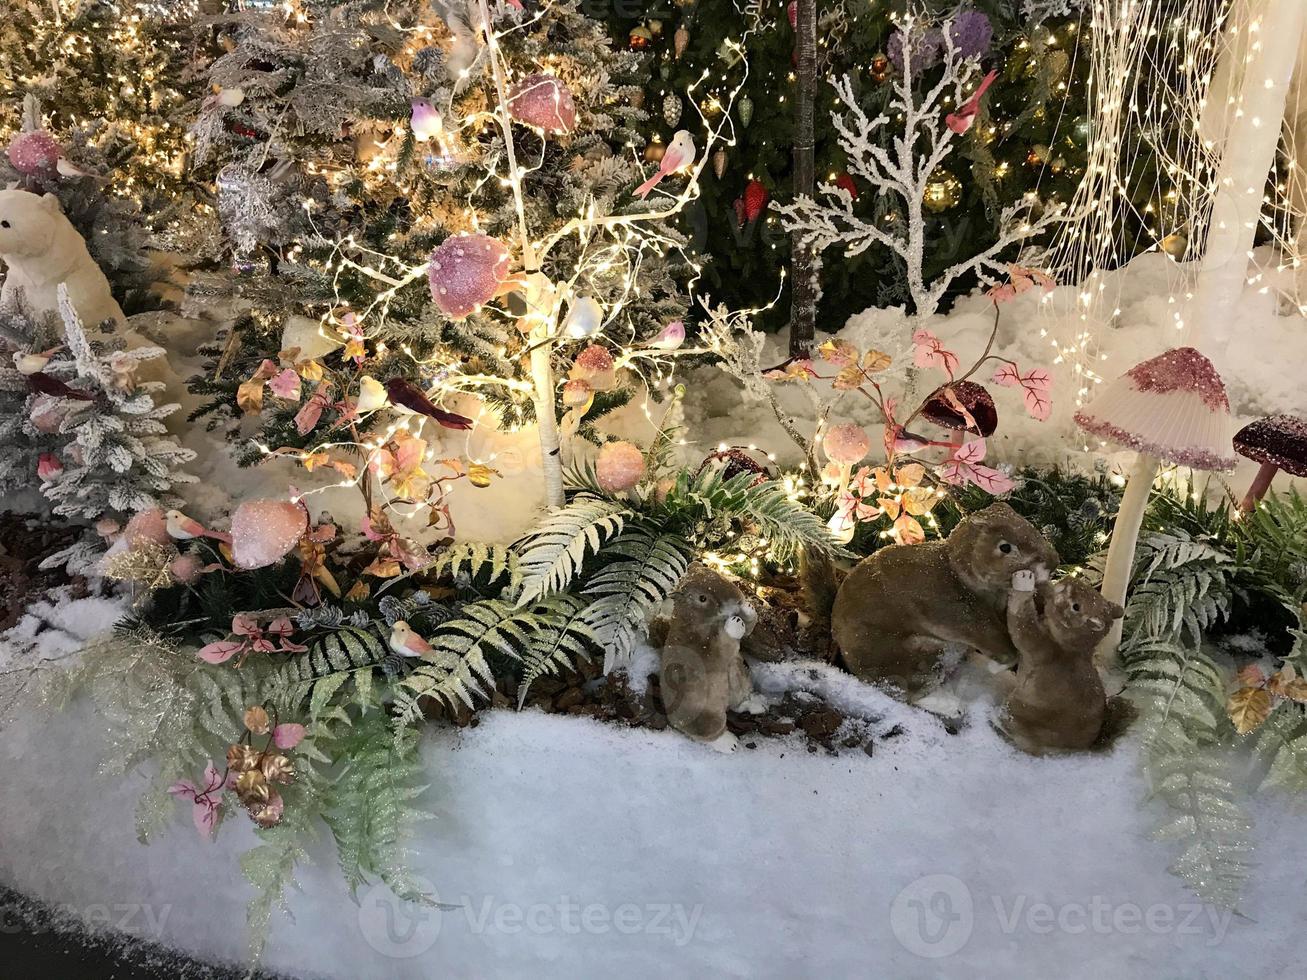 decorações de ano novo para o centro comercial. árvores de natal artificiais com iluminação. em um monte de neve ursos, esquilos e furões. animais artificiais comemoram o ano novo foto